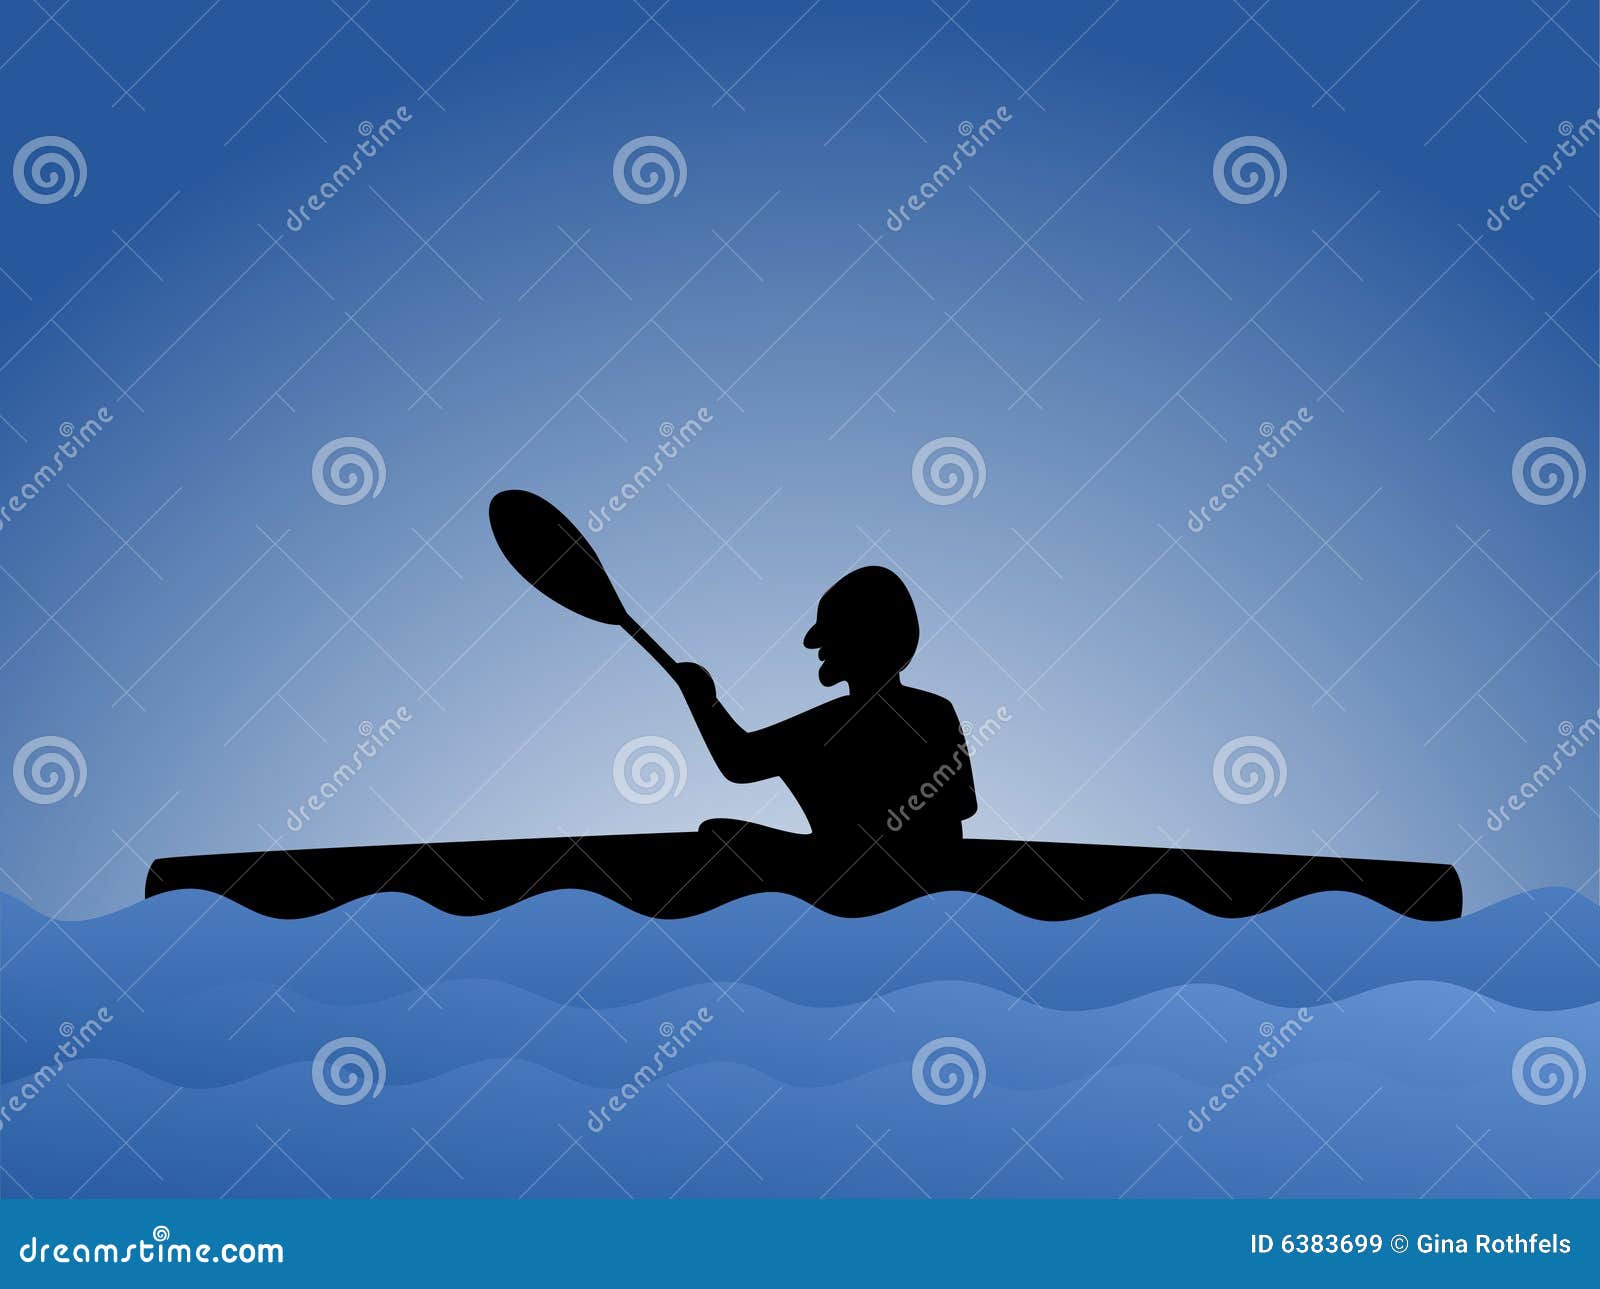 Royalty Free Stock Images: Paddler in kayak